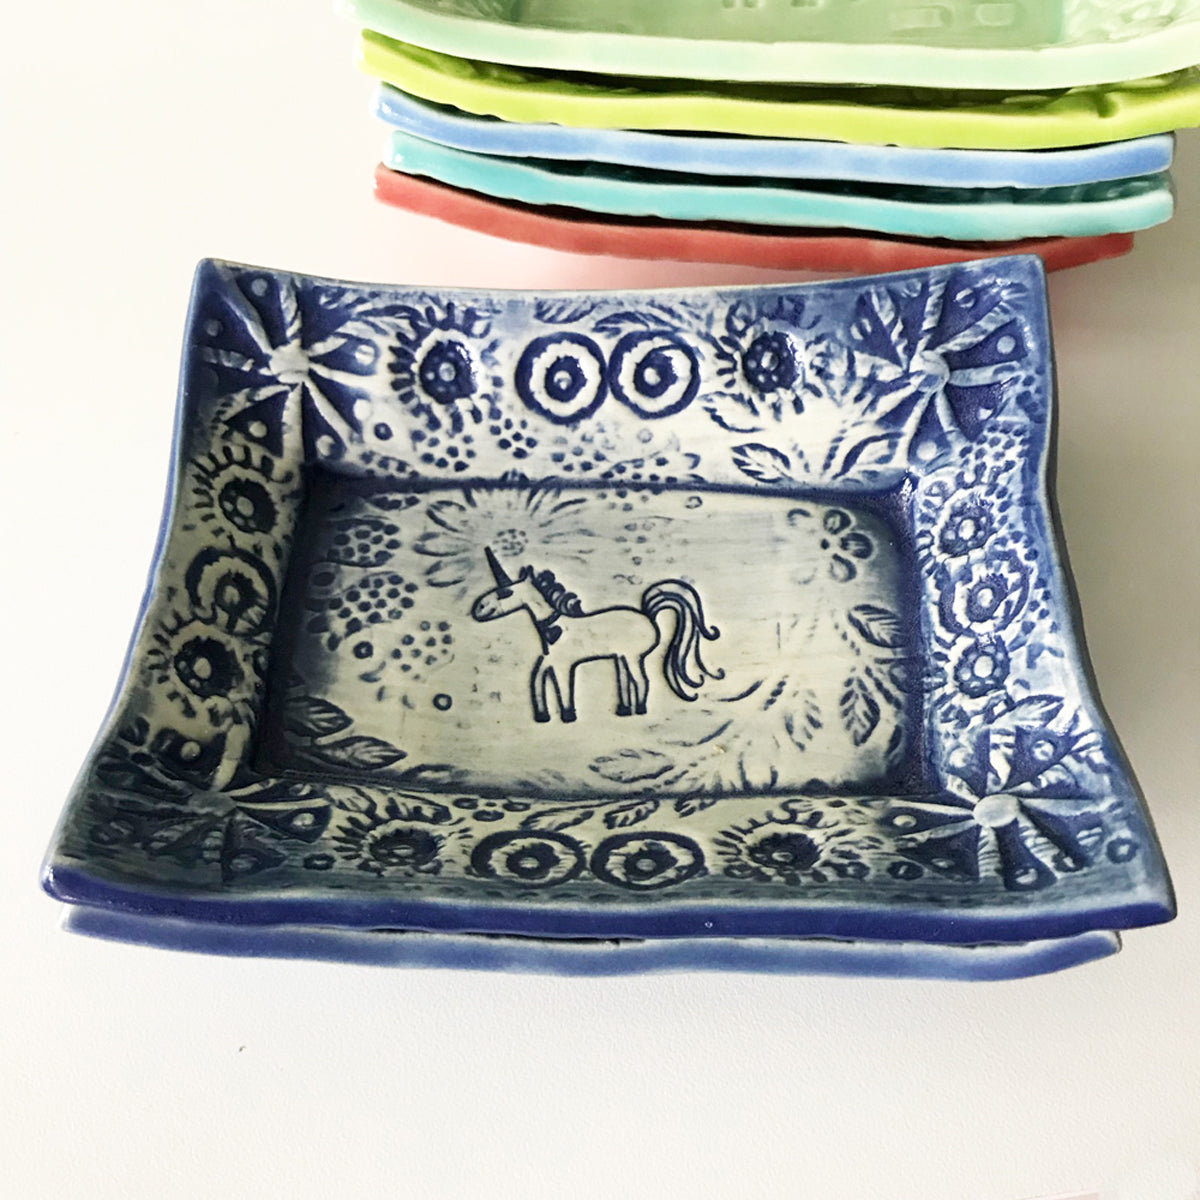 Cute Little Soap Dish - Unicorn Delft Blue